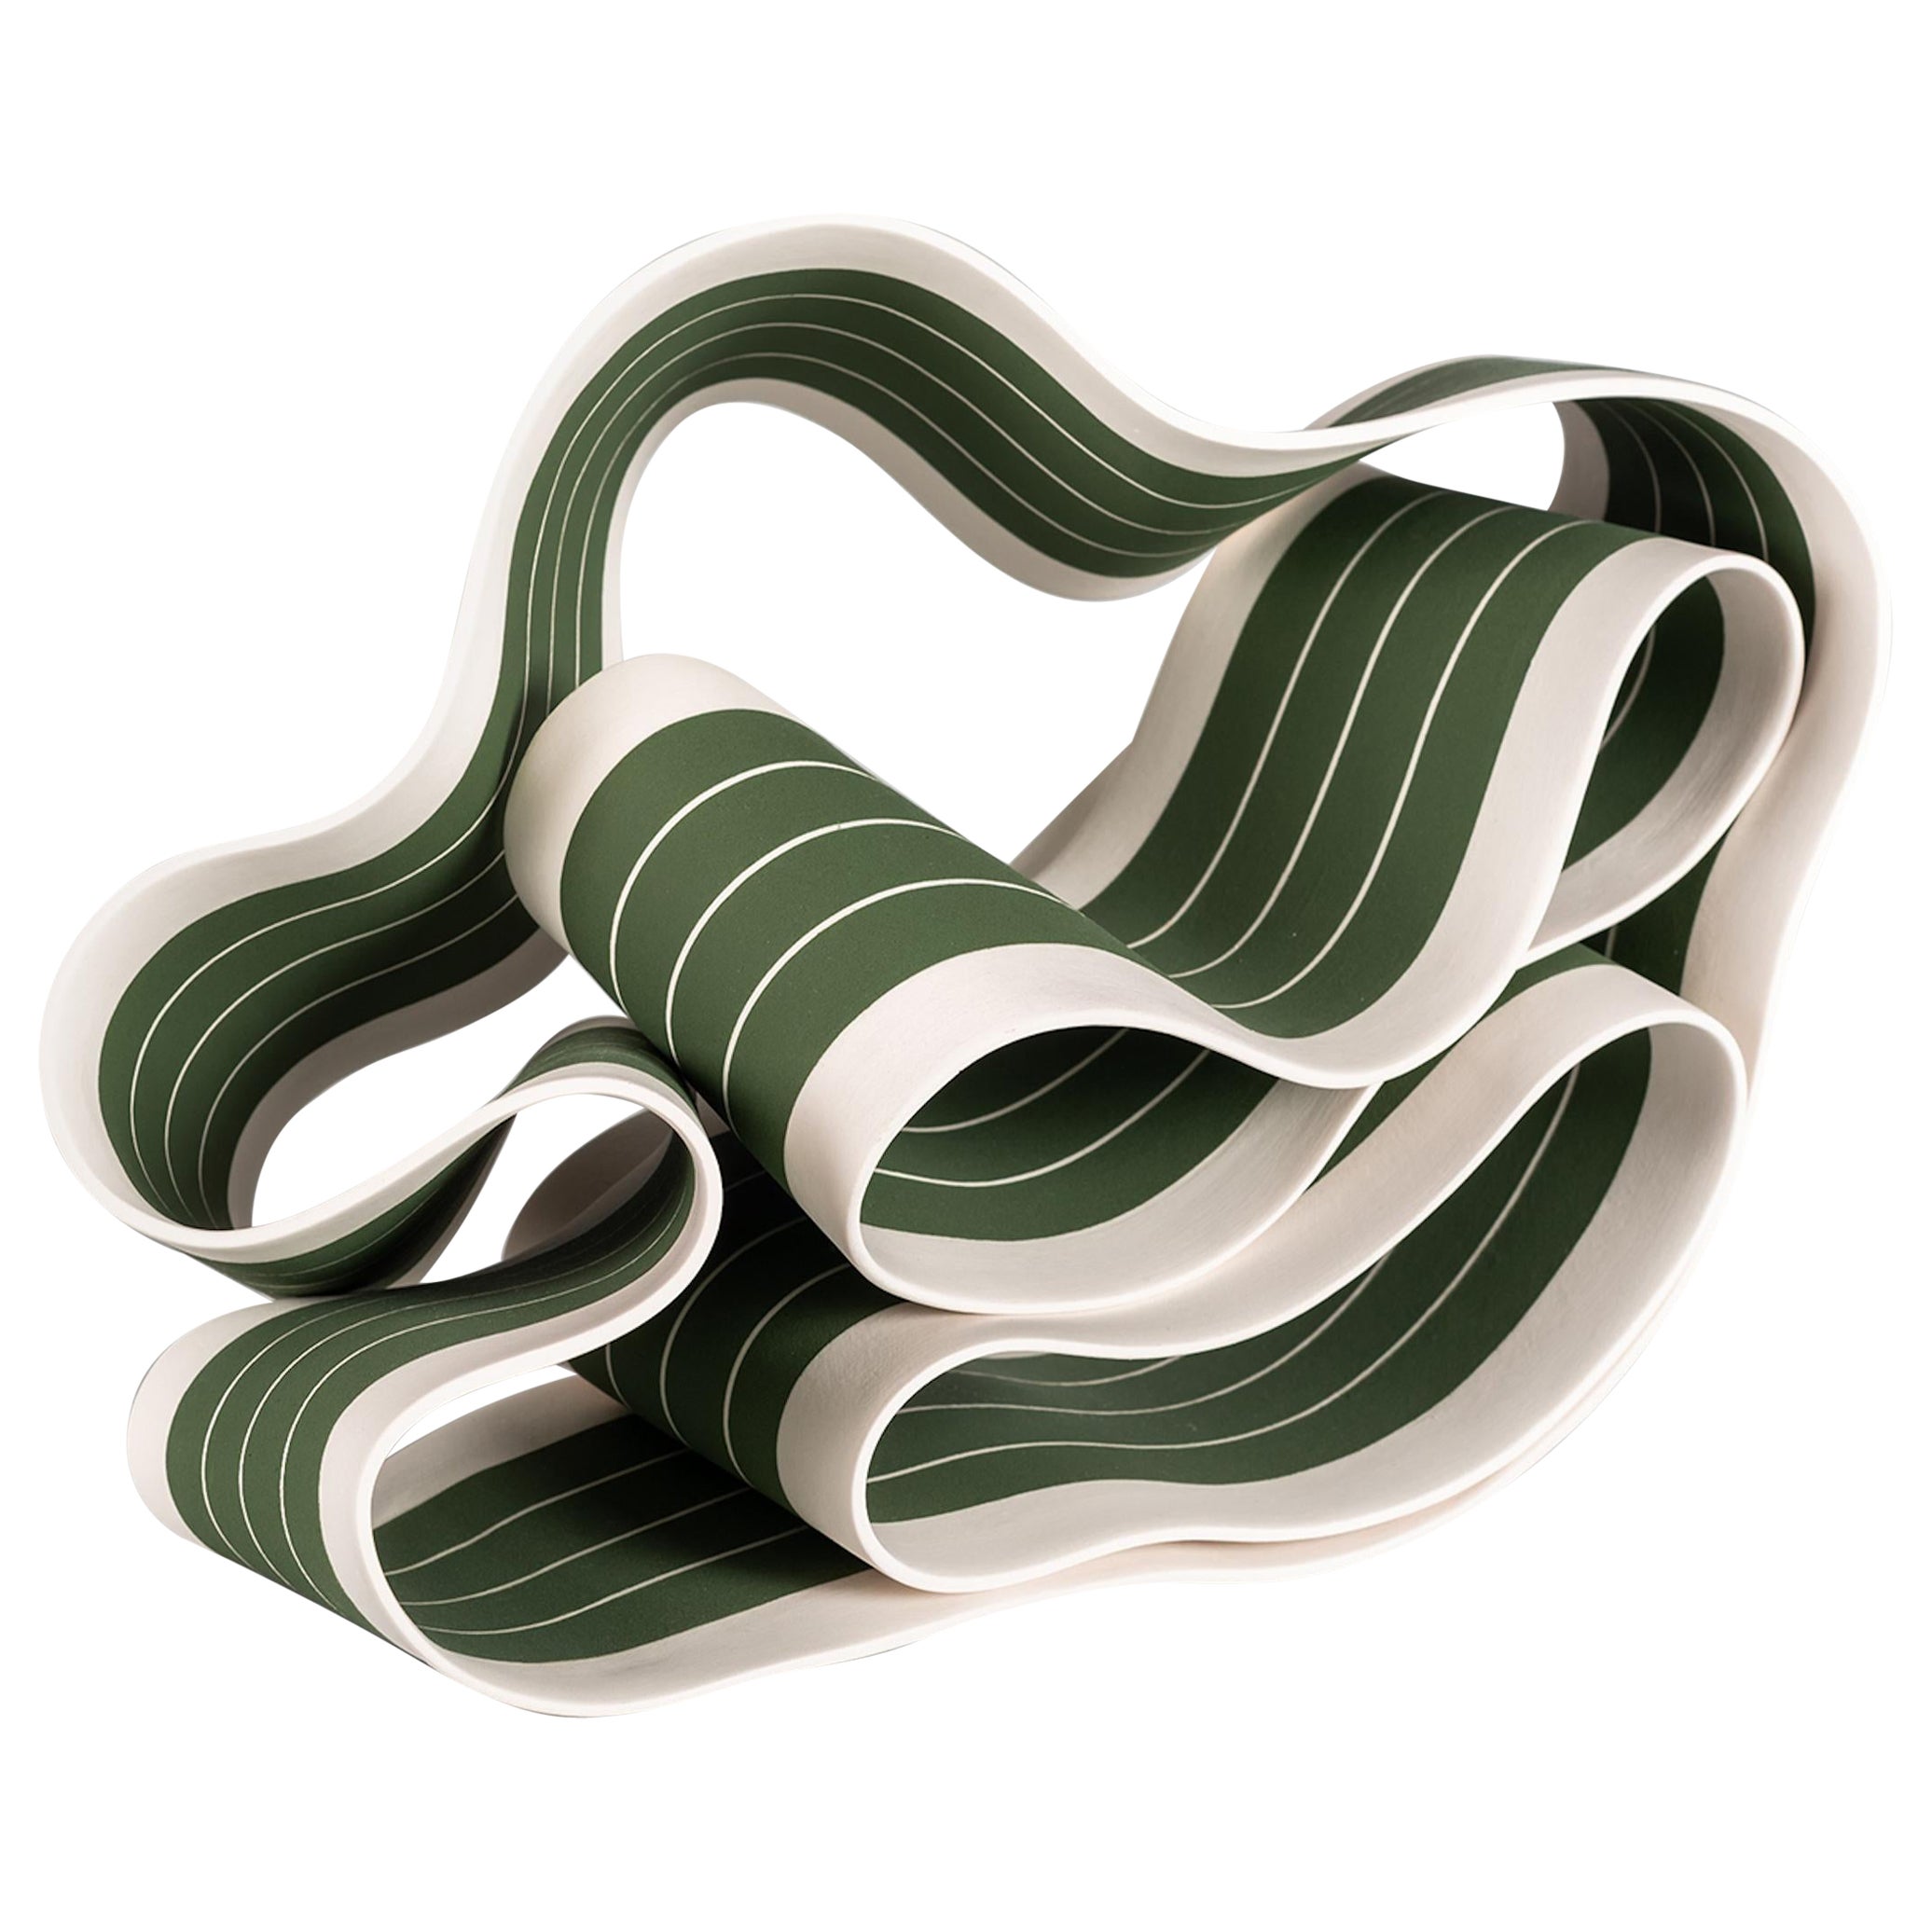 Folding in Motion 4 ist eine einzigartige Papier-Porzellan-Skulptur des zeitgenössischen Künstlers Simcha Even-Chen mit den Maßen 22 × 30 × 19 cm (8,7 × 11,8 × 7,5 Zoll). Die Skulptur ist signiert und wird mit einem Echtheitszertifikat